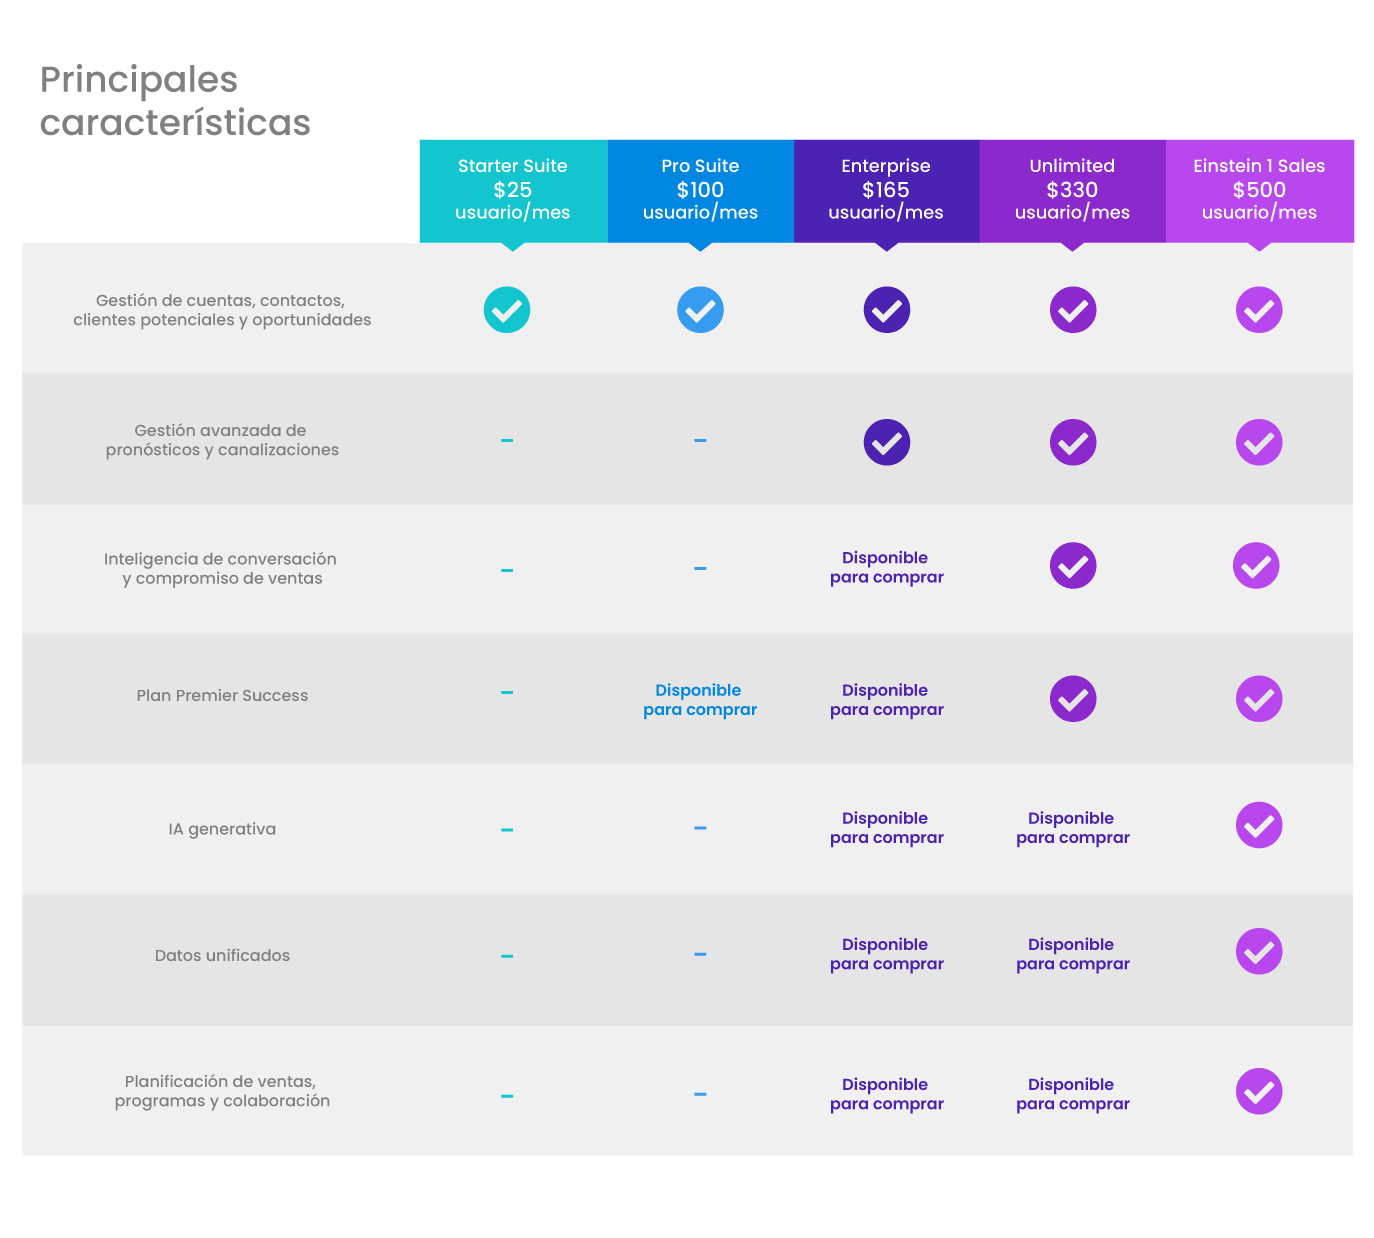 Ediciones de Salesforce - Principales características